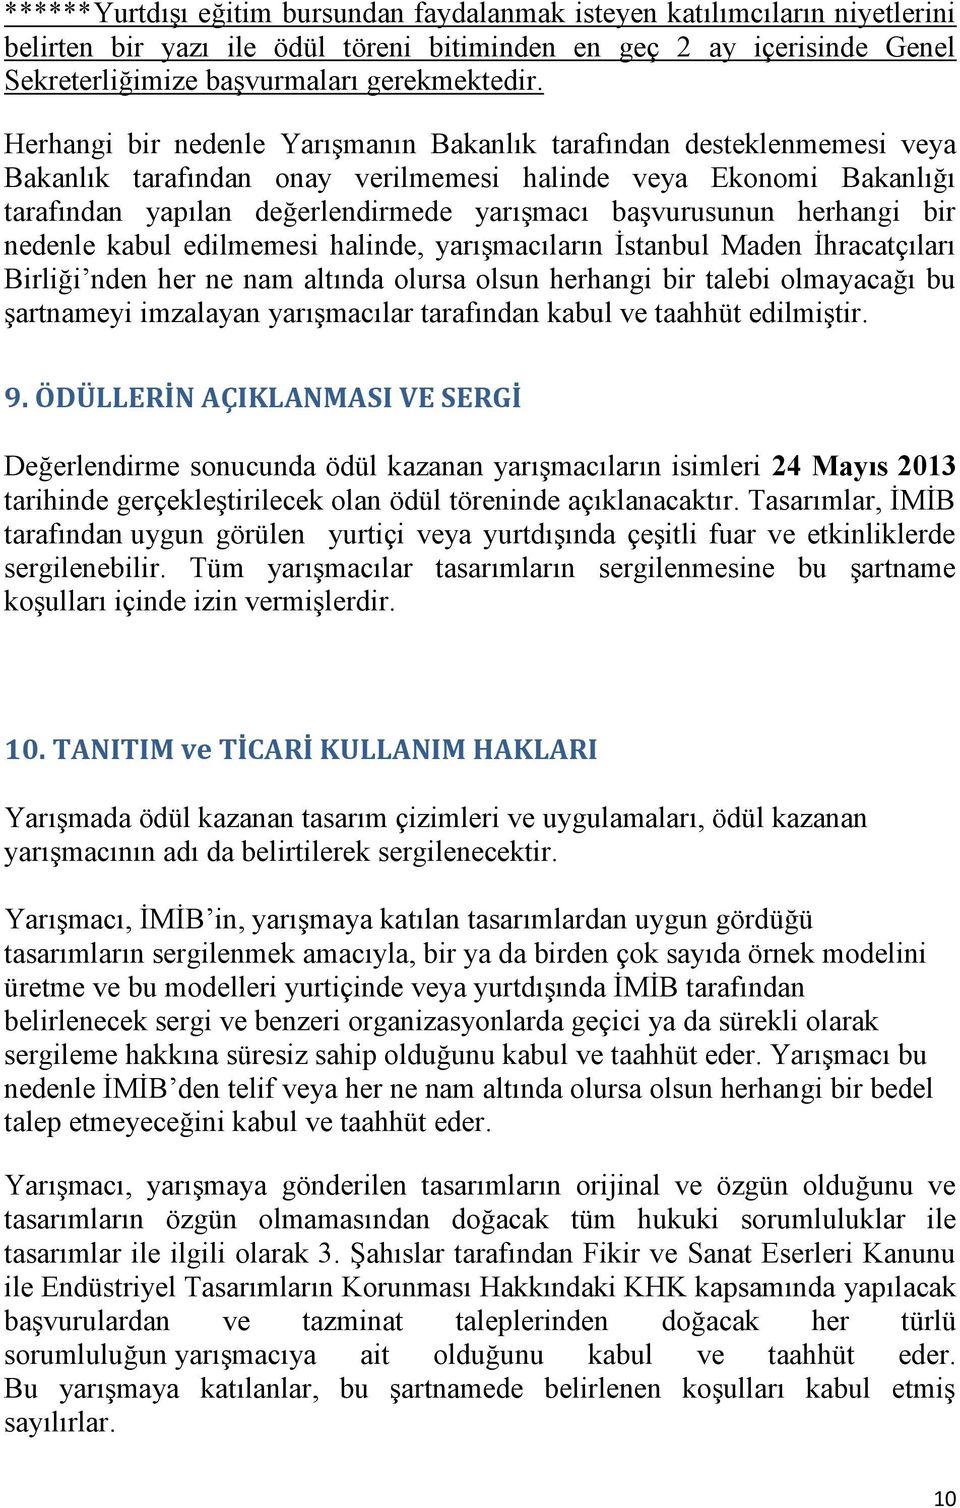 herhangi bir nedenle kabul edilmemesi halinde, yarışmacıların İstanbul Maden İhracatçıları Birliği nden her ne nam altında olursa olsun herhangi bir talebi olmayacağı bu şartnameyi imzalayan